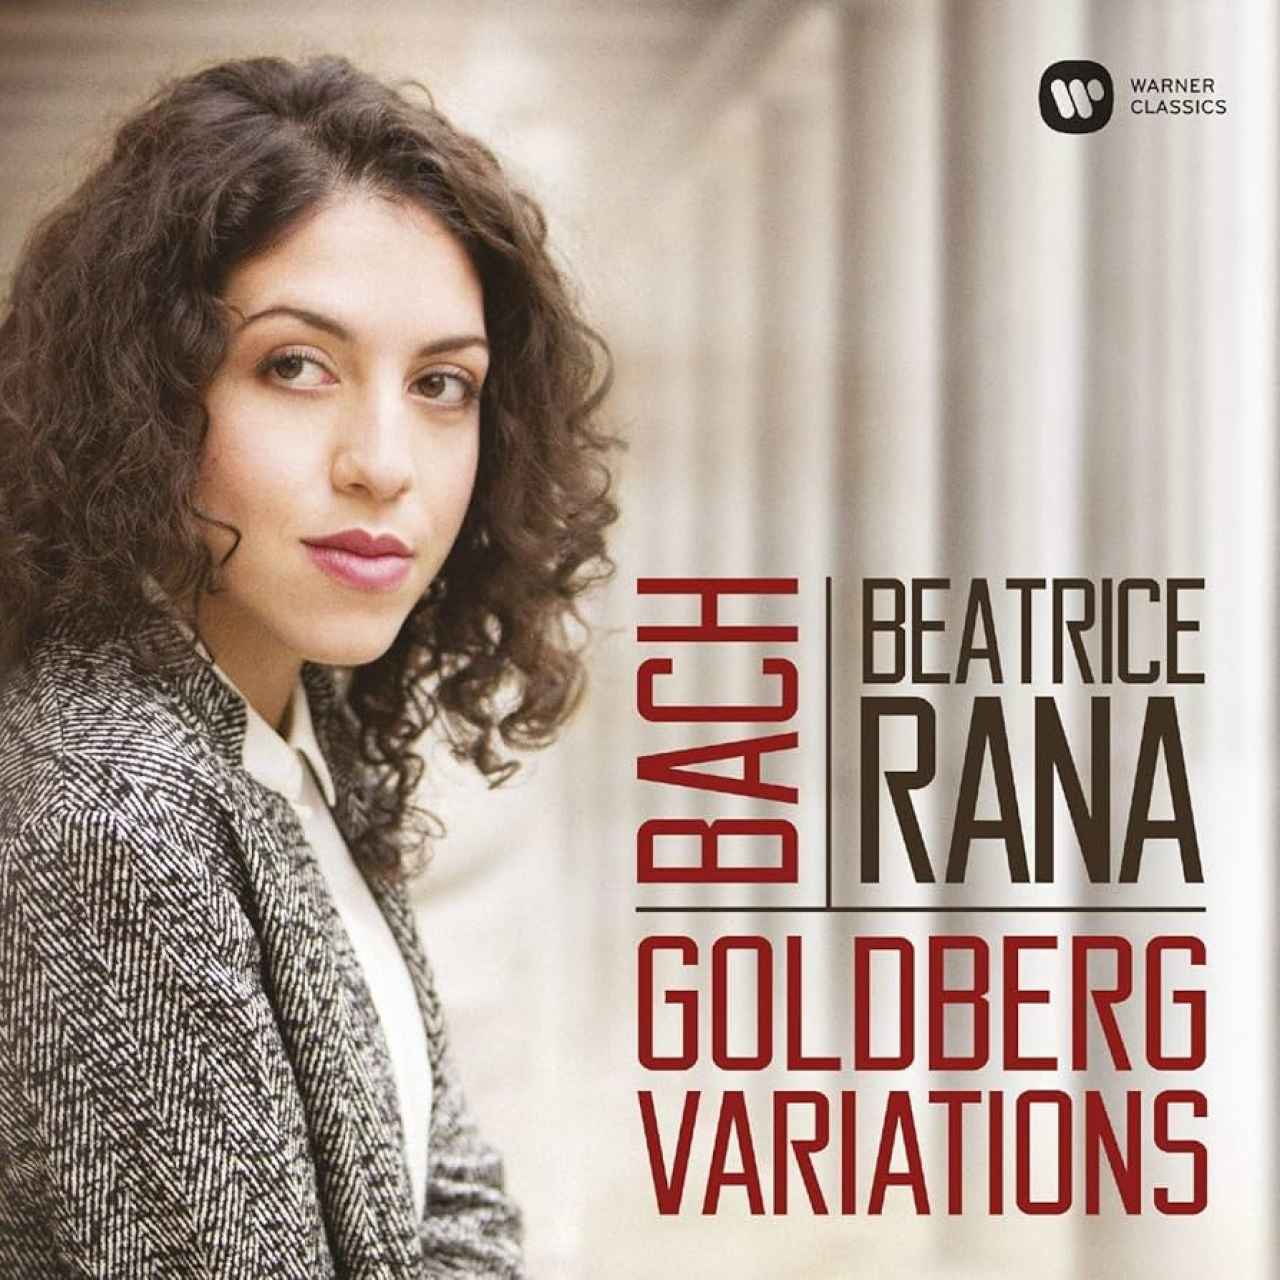 Grabación de Beatrice Rana de las 'Variaciones Goldberg' de Bach